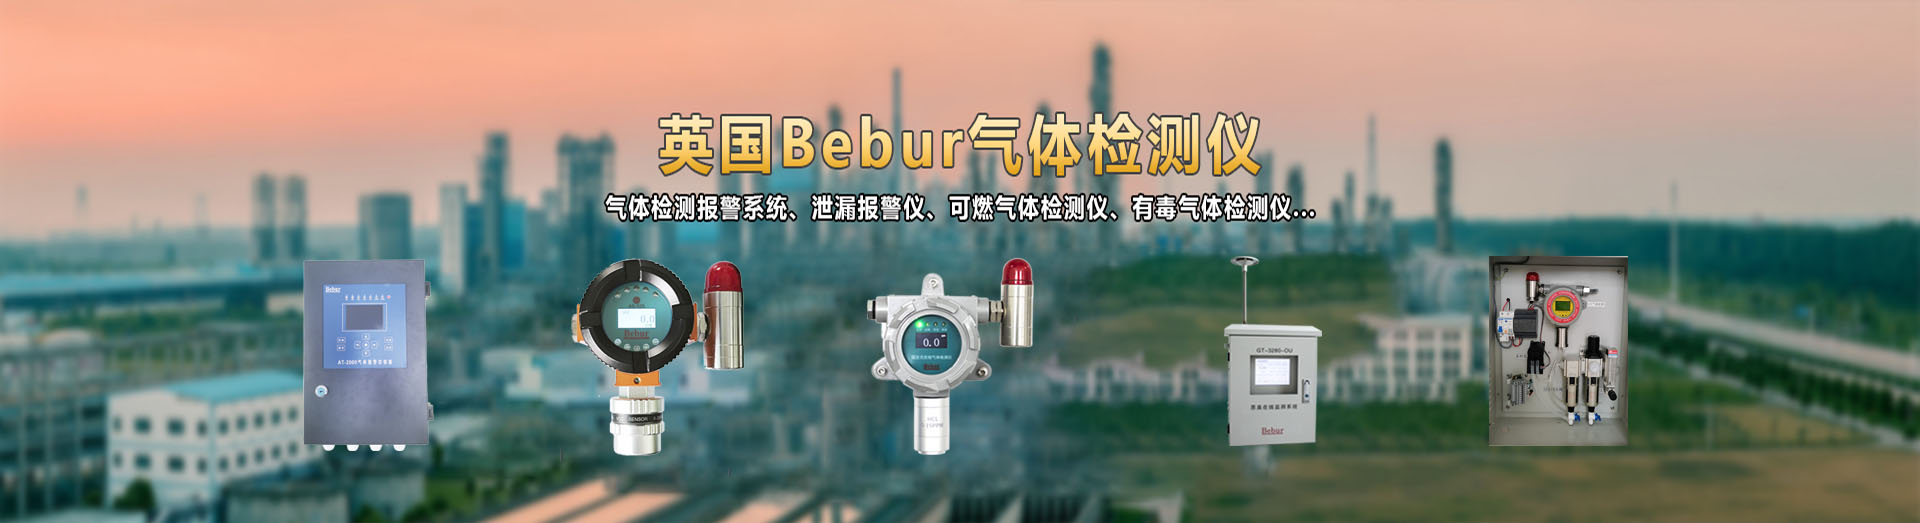 北京思创恒远泵吸式过氧化氢检测仪系列产品